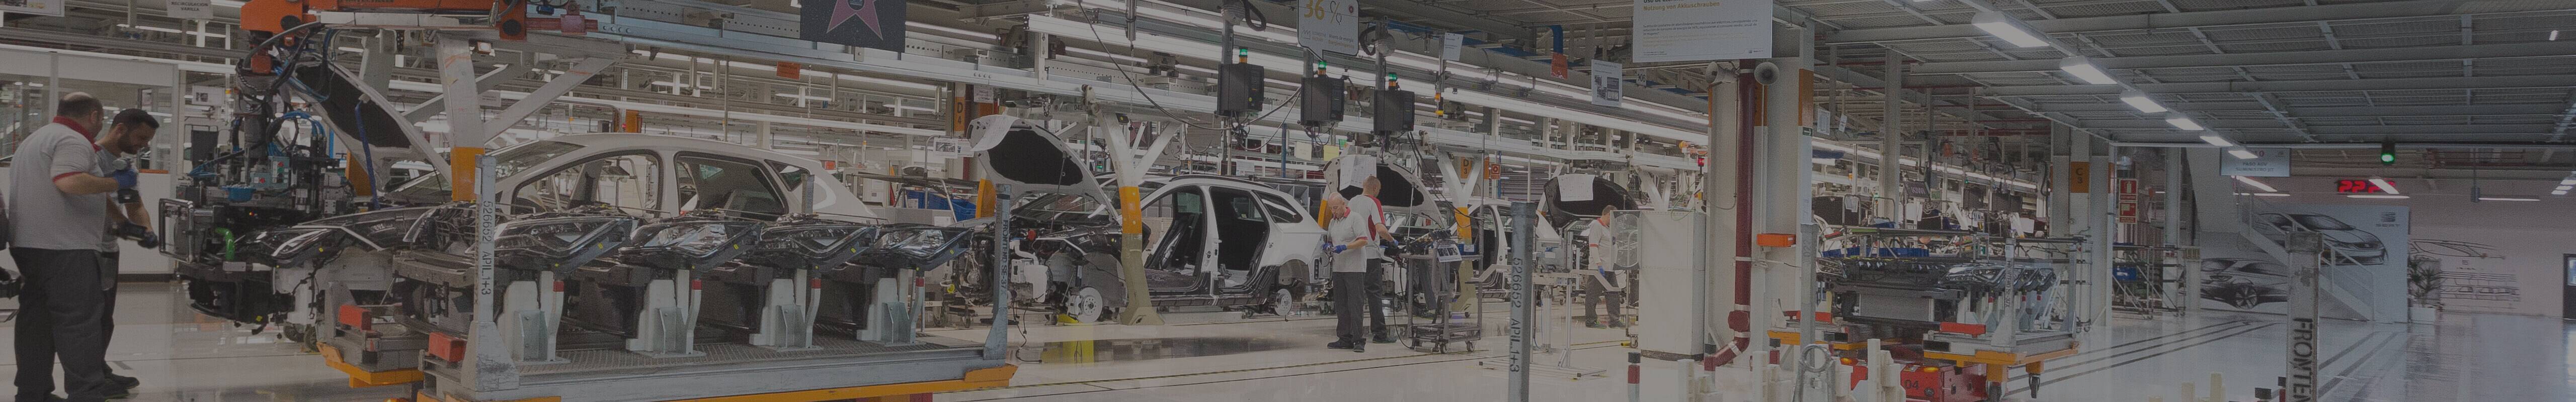 Operatorzy i roboty pracujące w fabryce SEAT-a Martorell